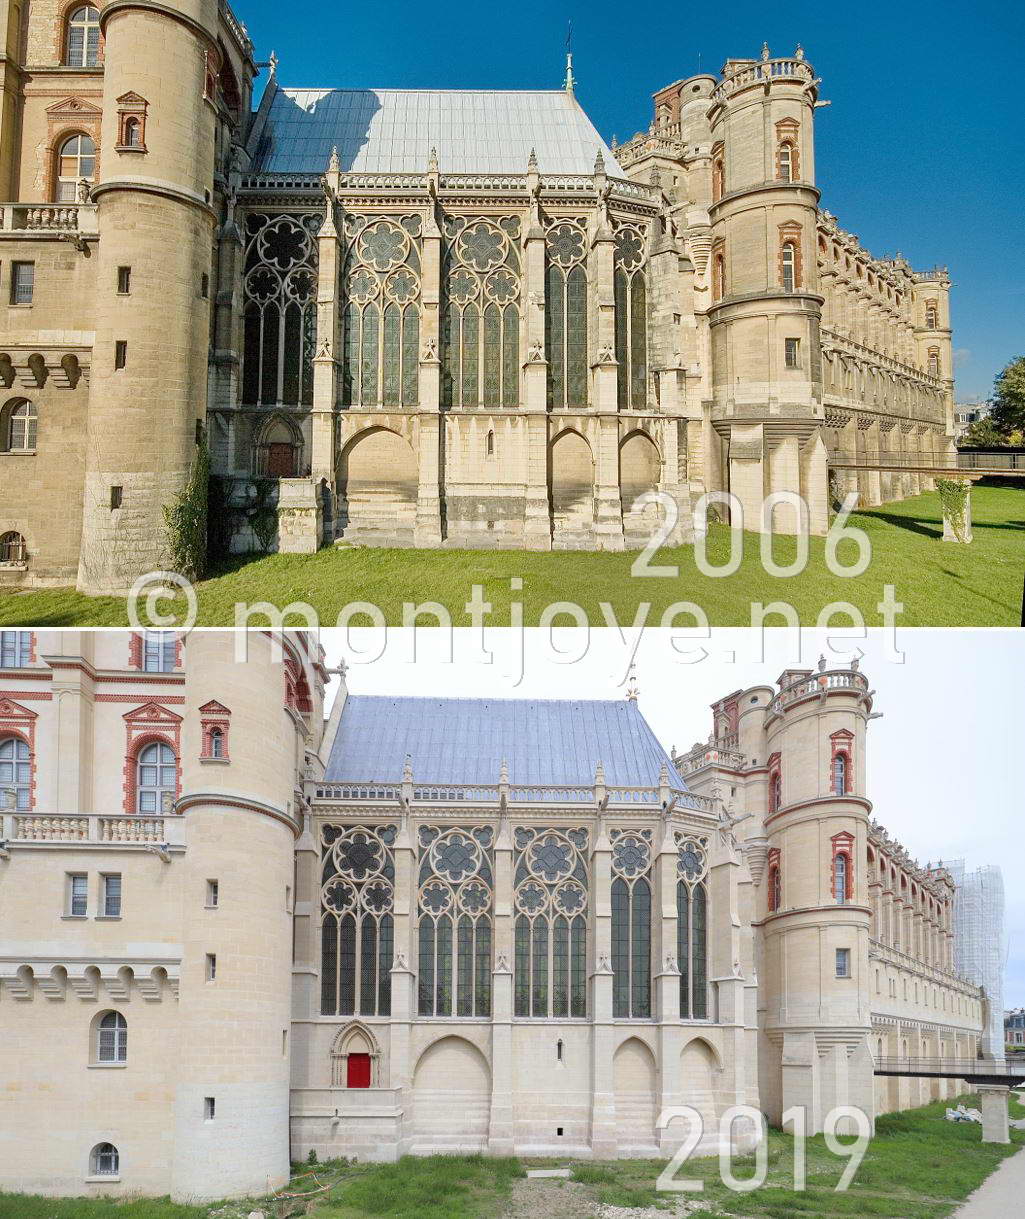 2014 - 2018, fin des travaux de restaurations de la Sainte-Chapelle.